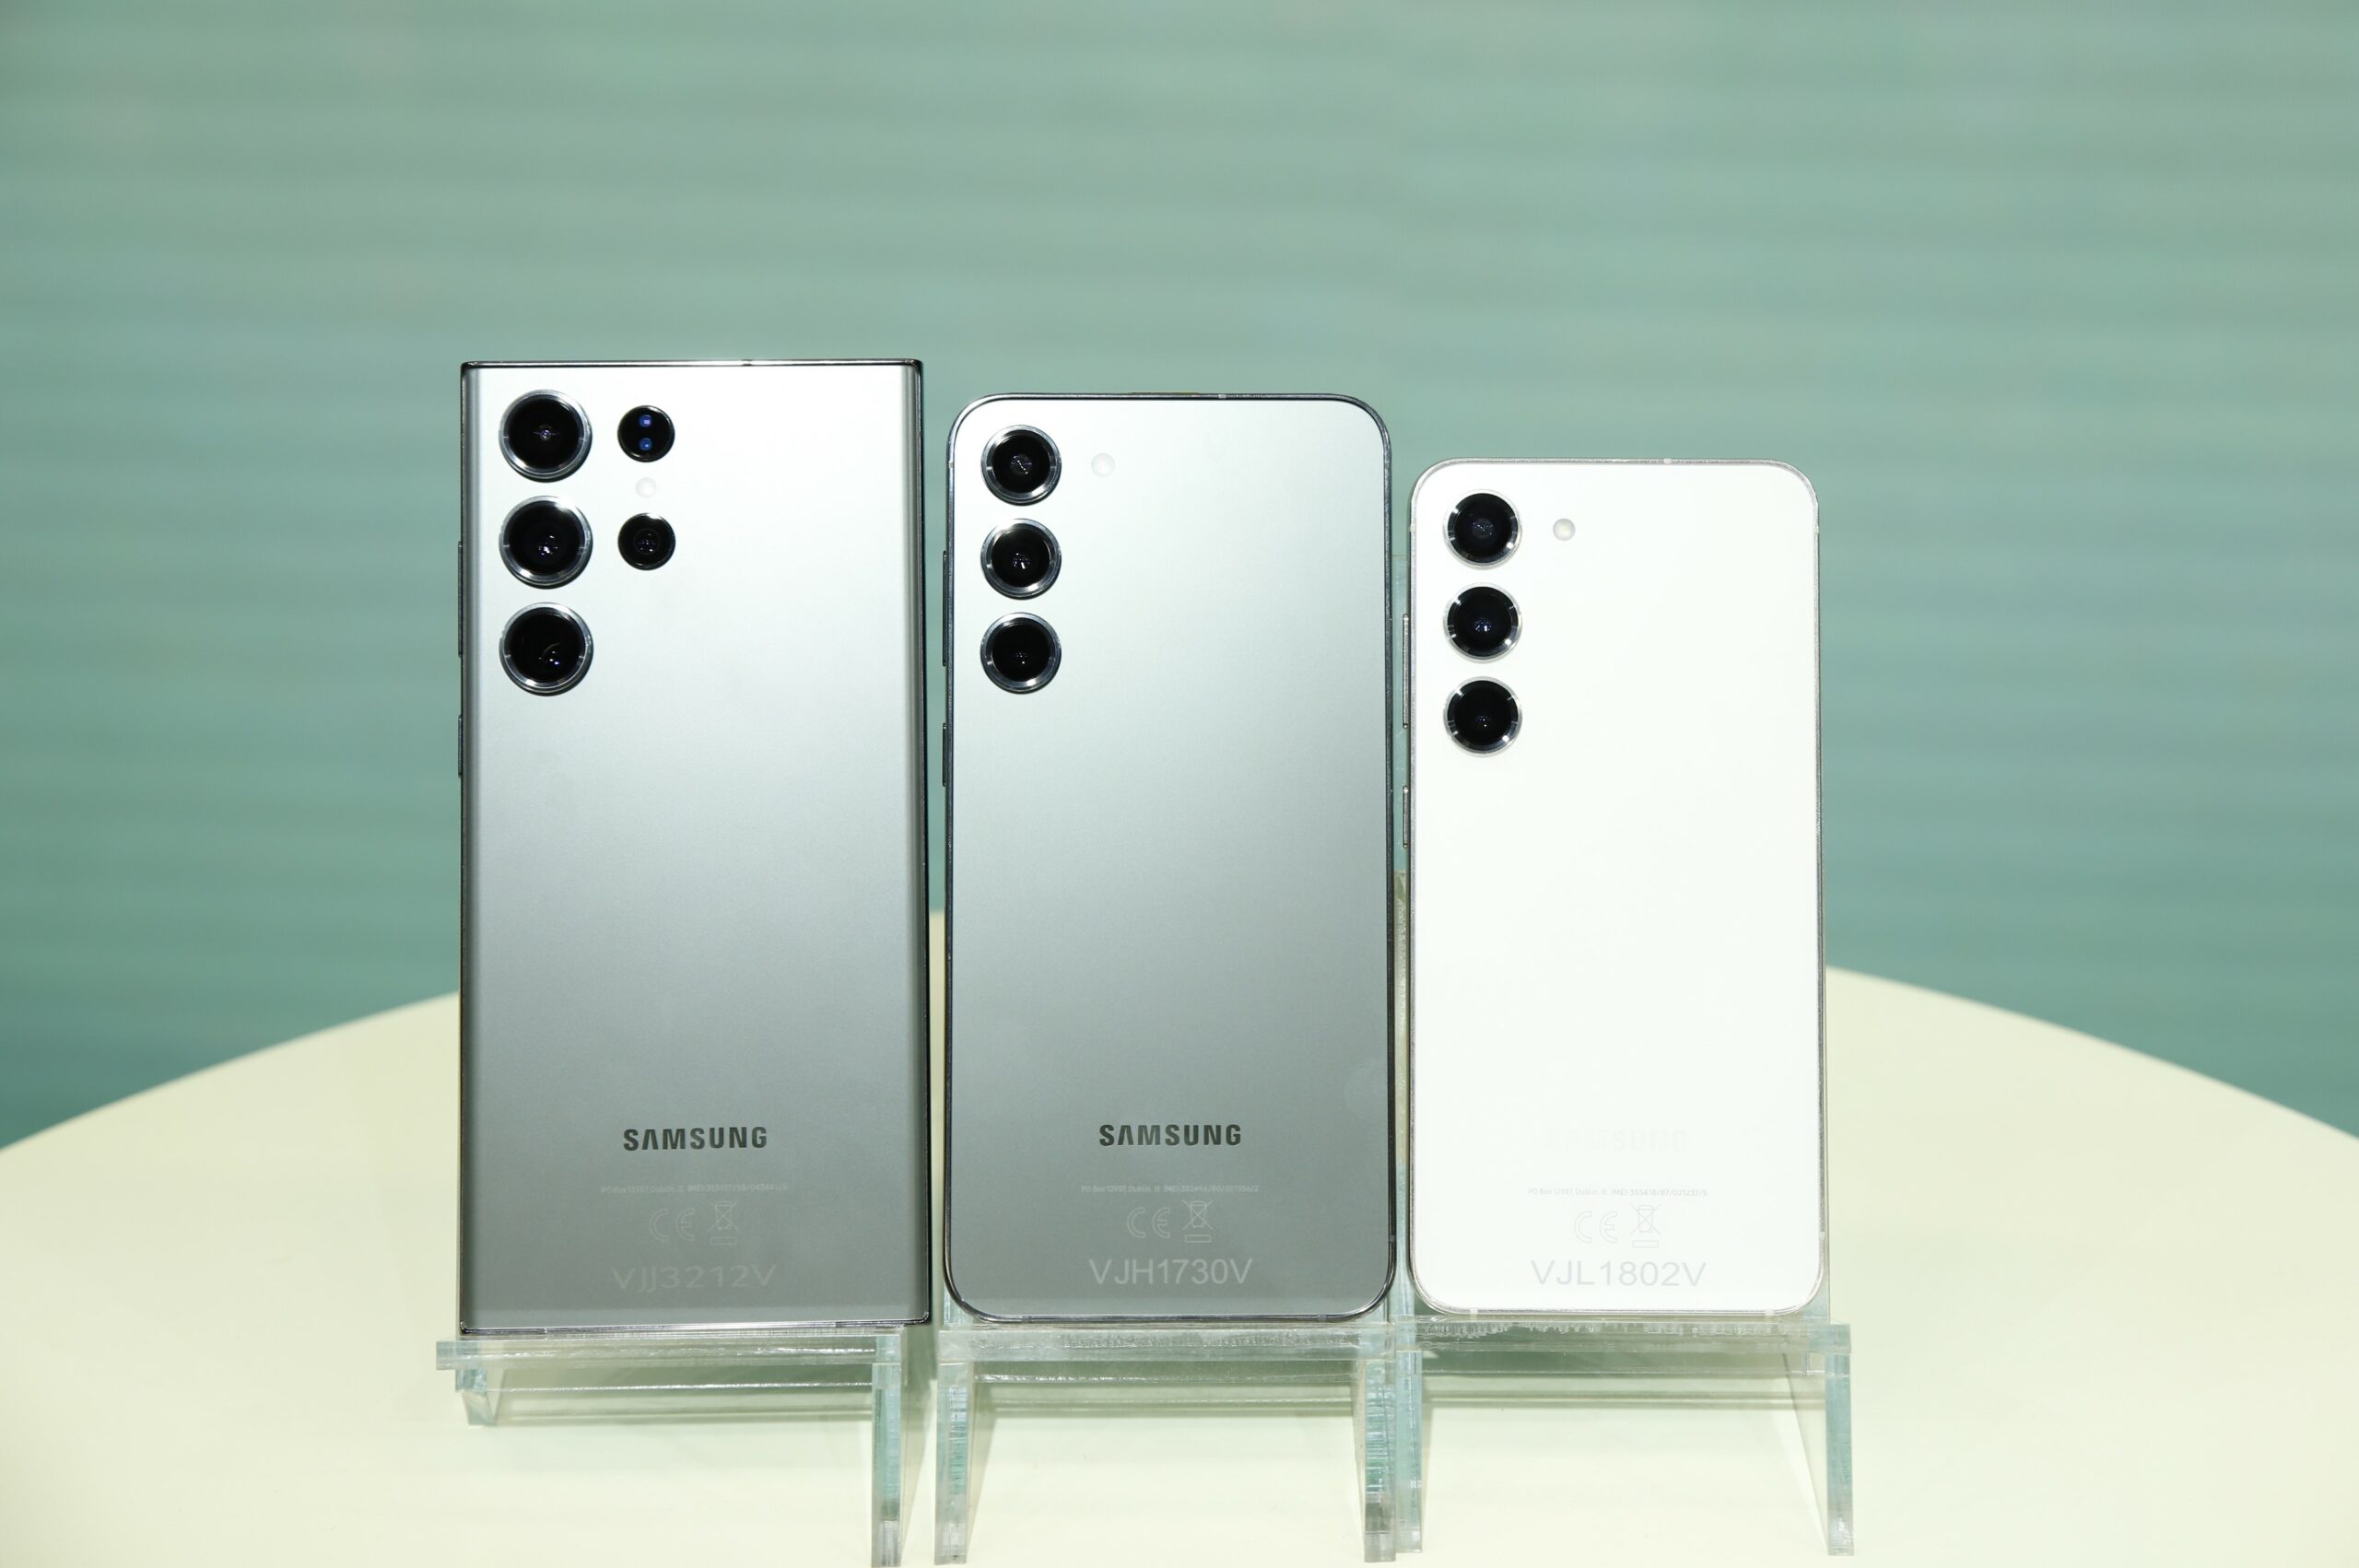 Galaxy S23 series ra mắt giá từ 24.99 triệu đồng, bộ quà khủng hơn 7 triệu đồng khi đặt trước tại Di Động Việt